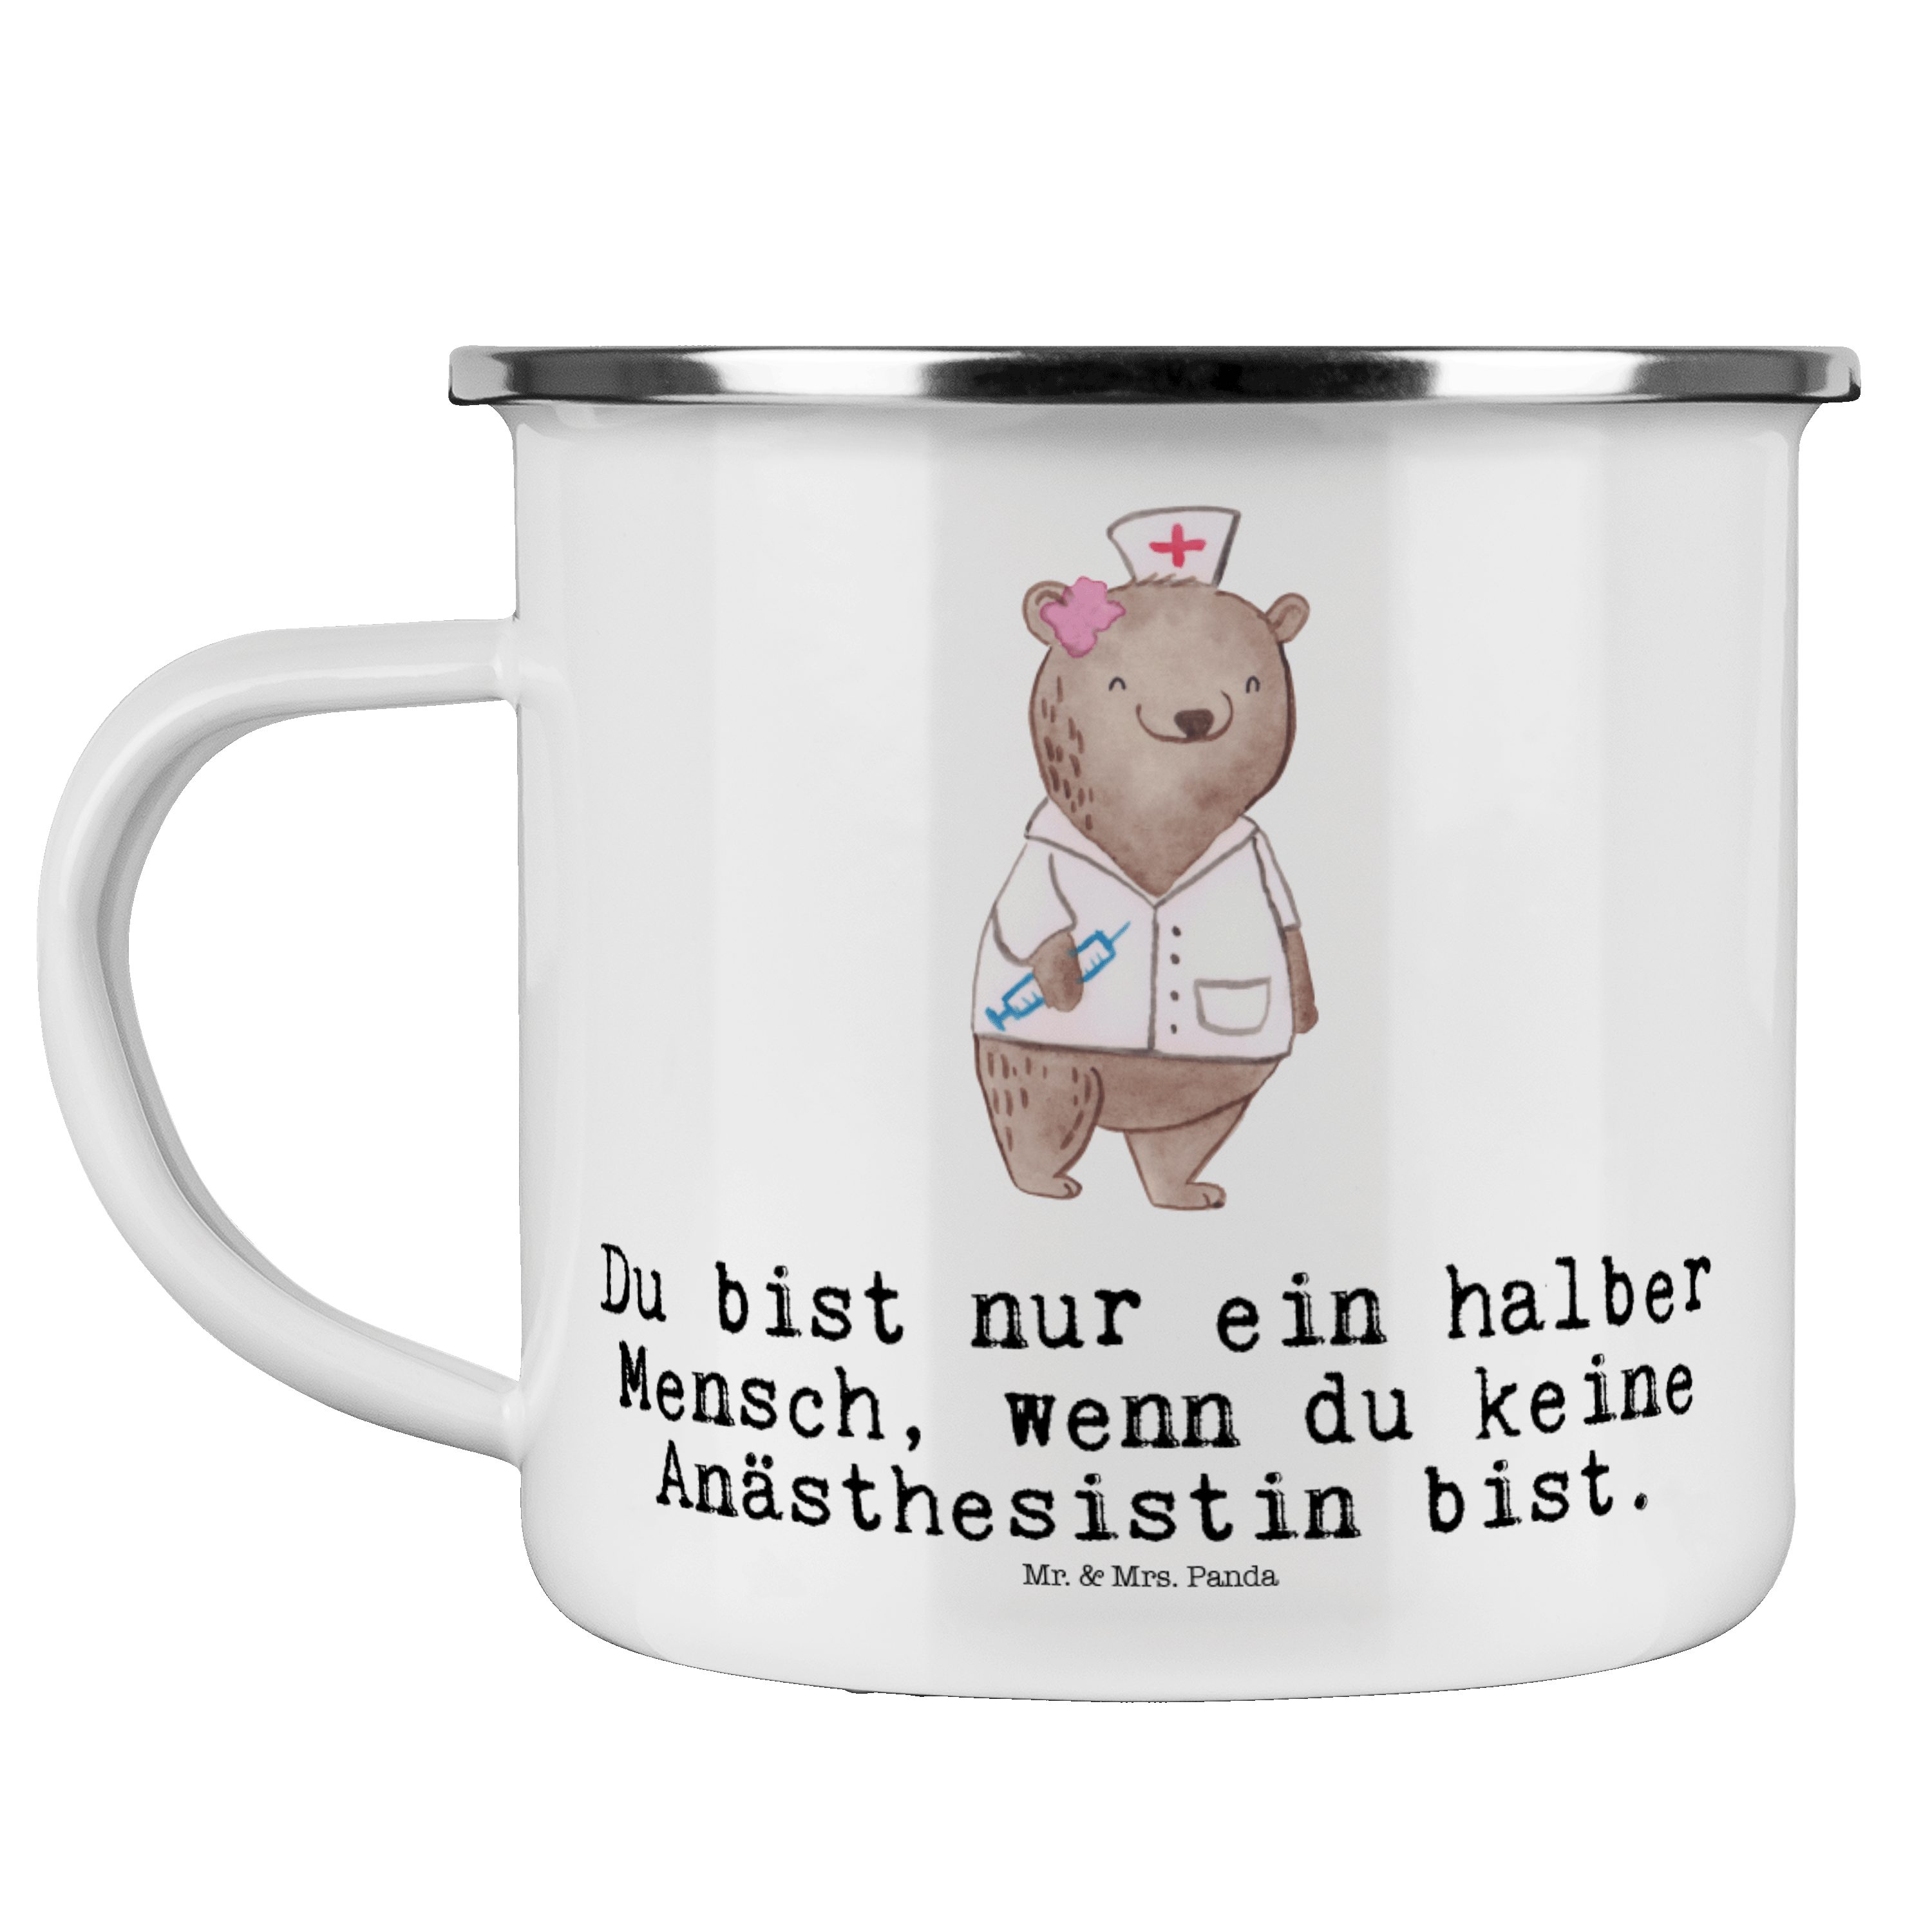 Mr. & Mrs. Panda Becher Anästhesistin mit Herz - Weiß - Geschenk, Studium, Kollegin, Kaffee B, Emaille